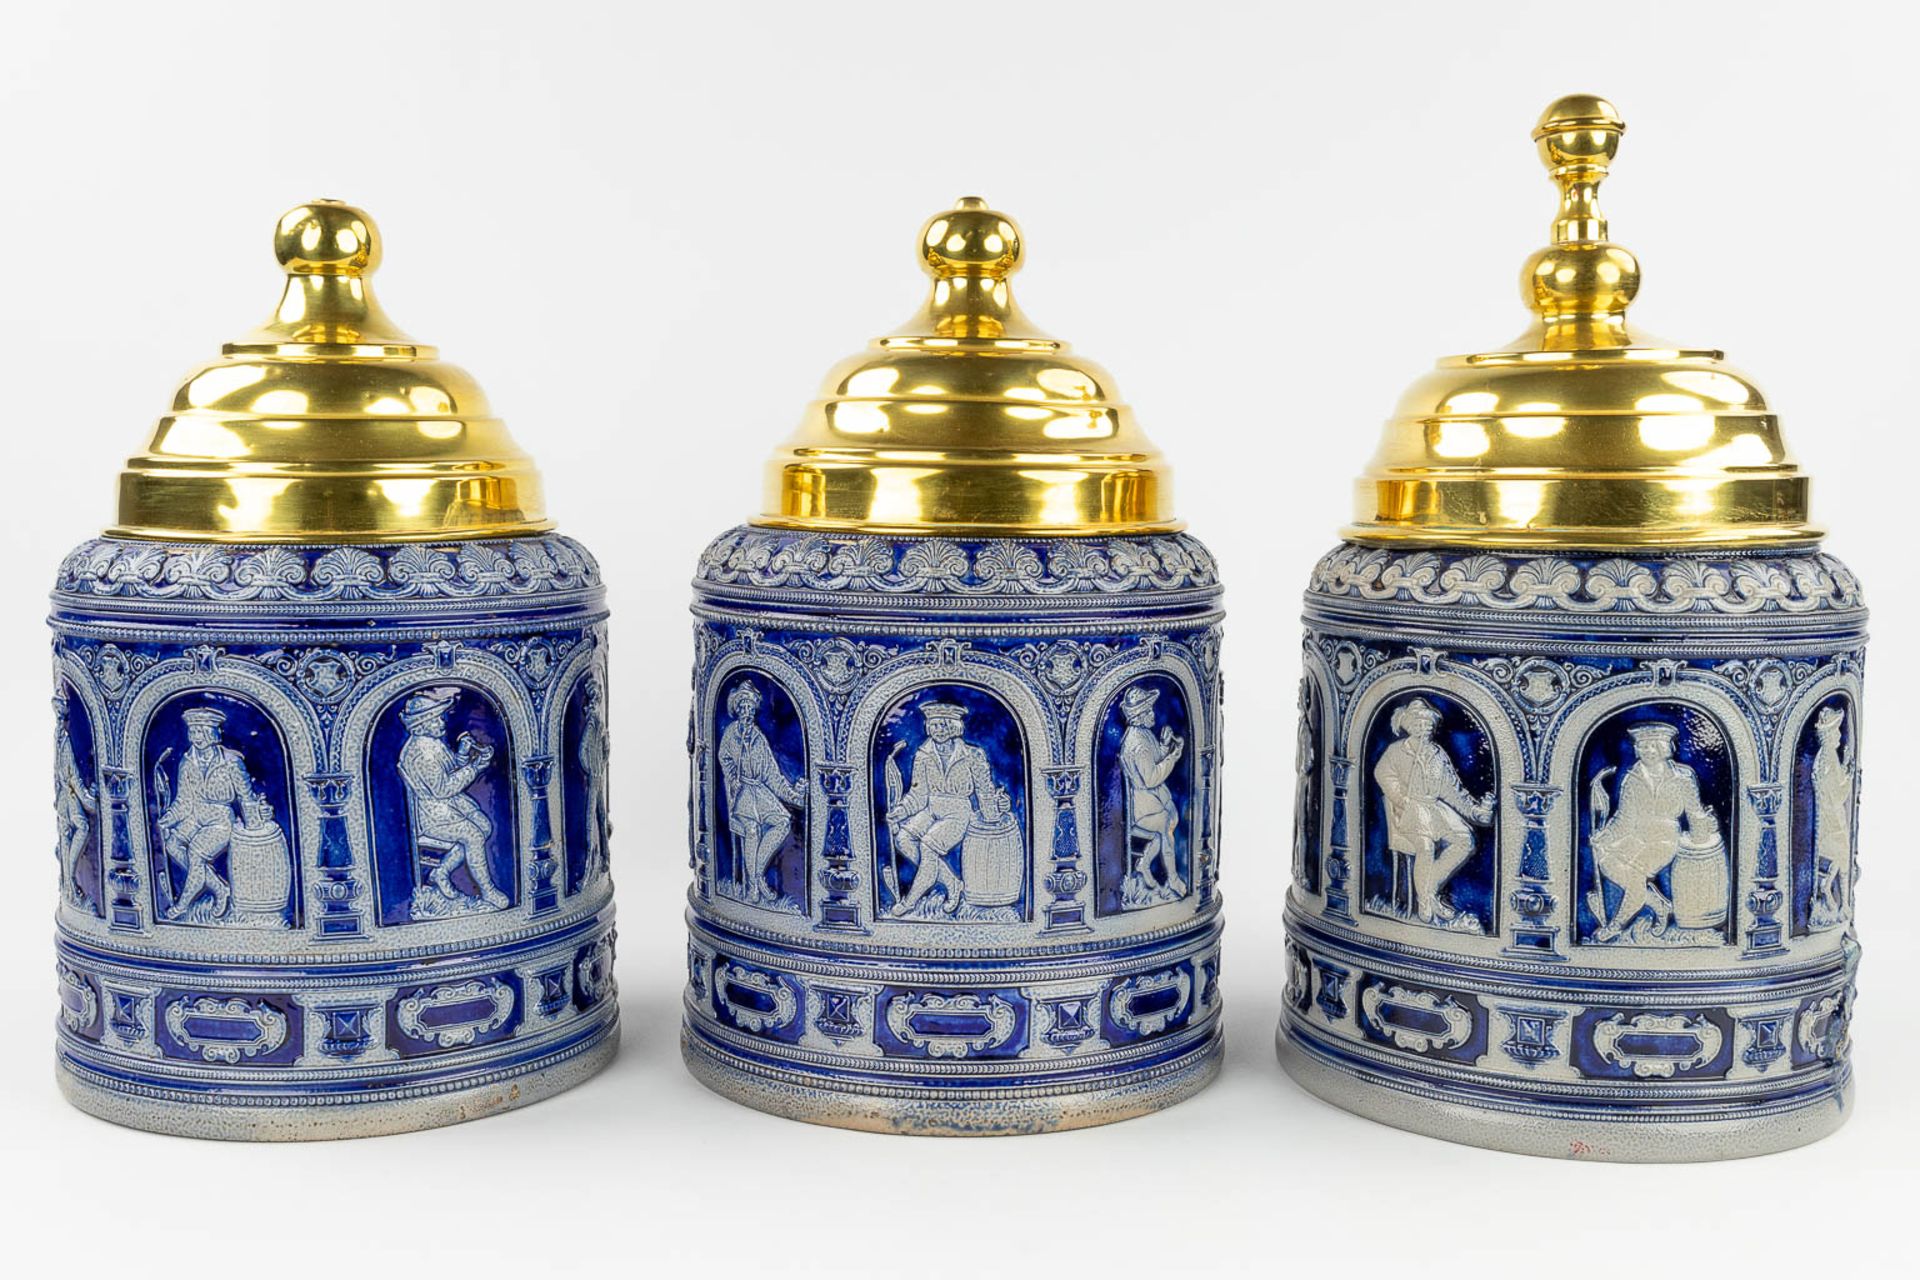 A set of 3 grs tabacco jars with brass lid, Germany, 19th C. (H: 38 x D: 23 cm) - Image 6 of 17